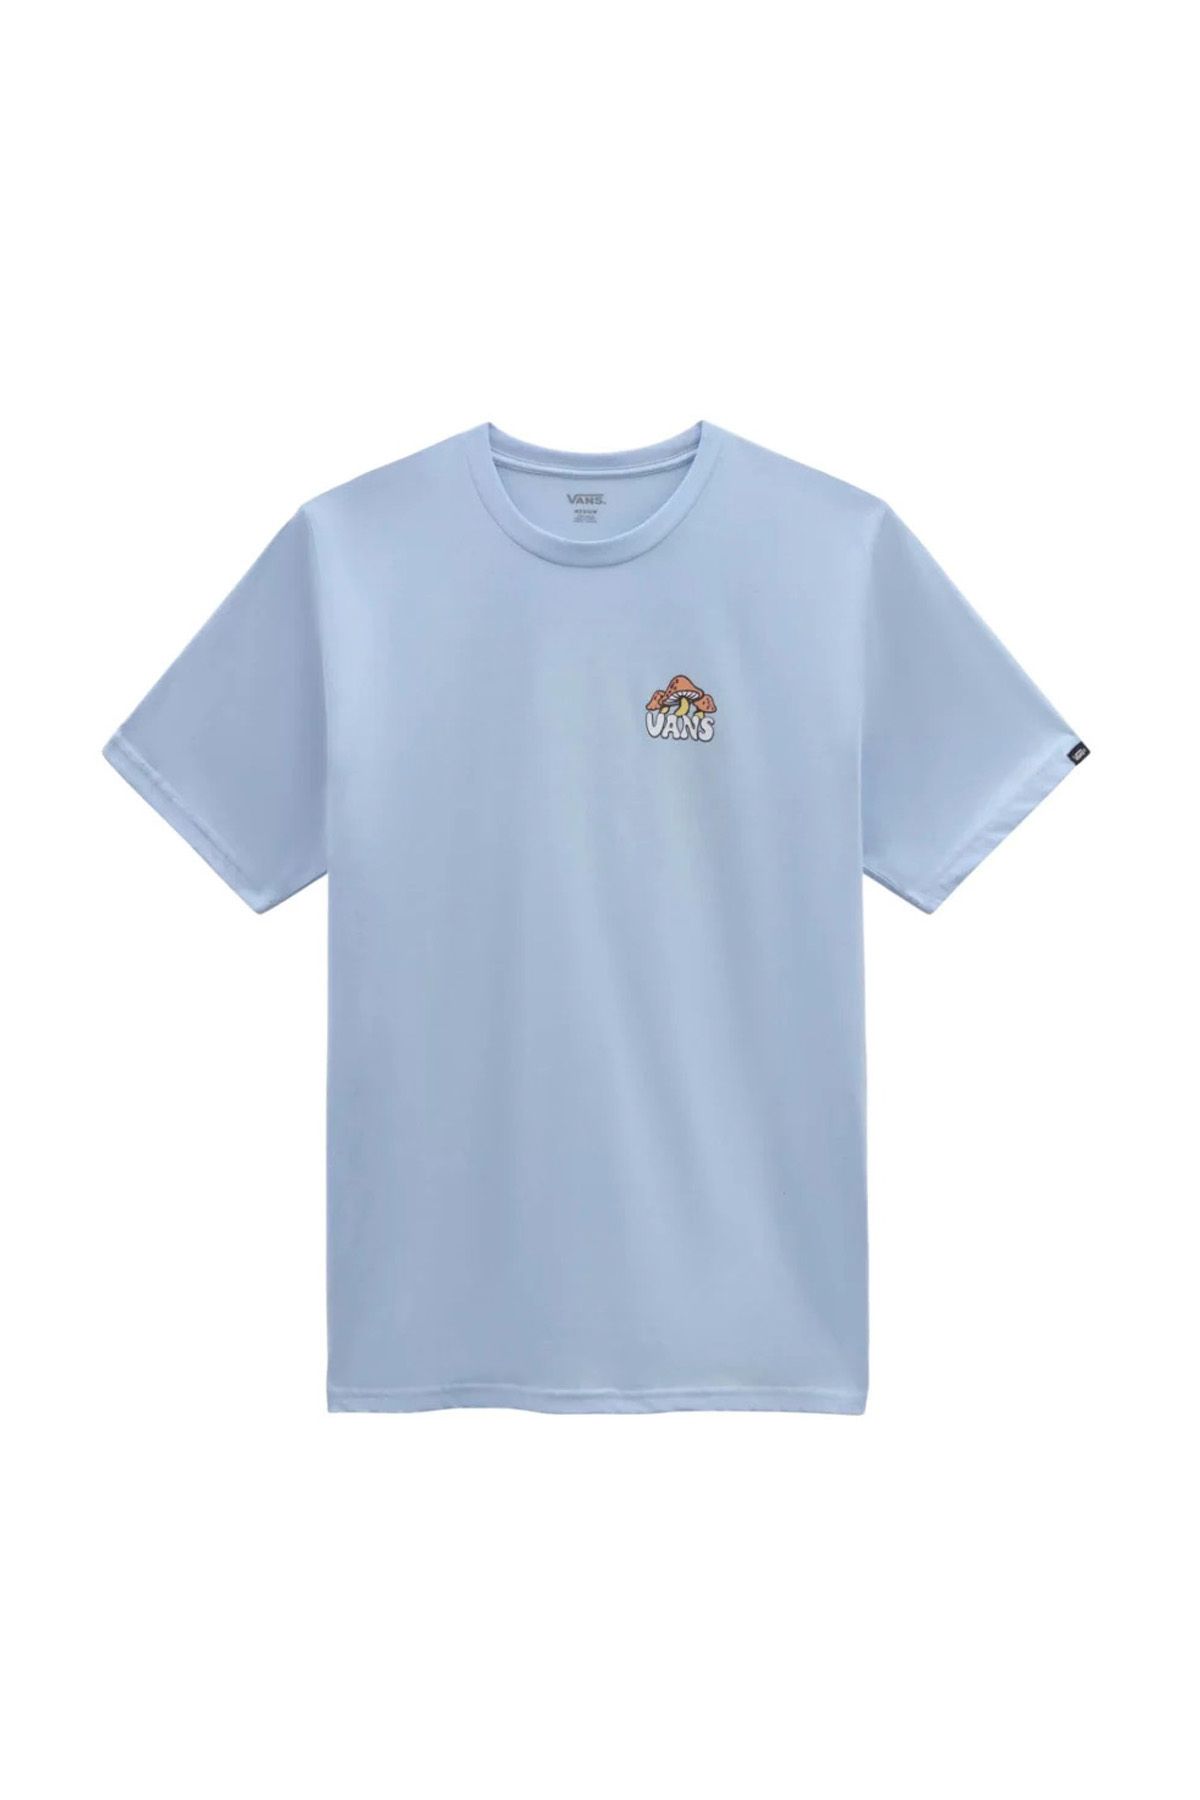 Vans MUSHRUUM TEE-B Mavi Erkek Kısa Kol T-Shirt